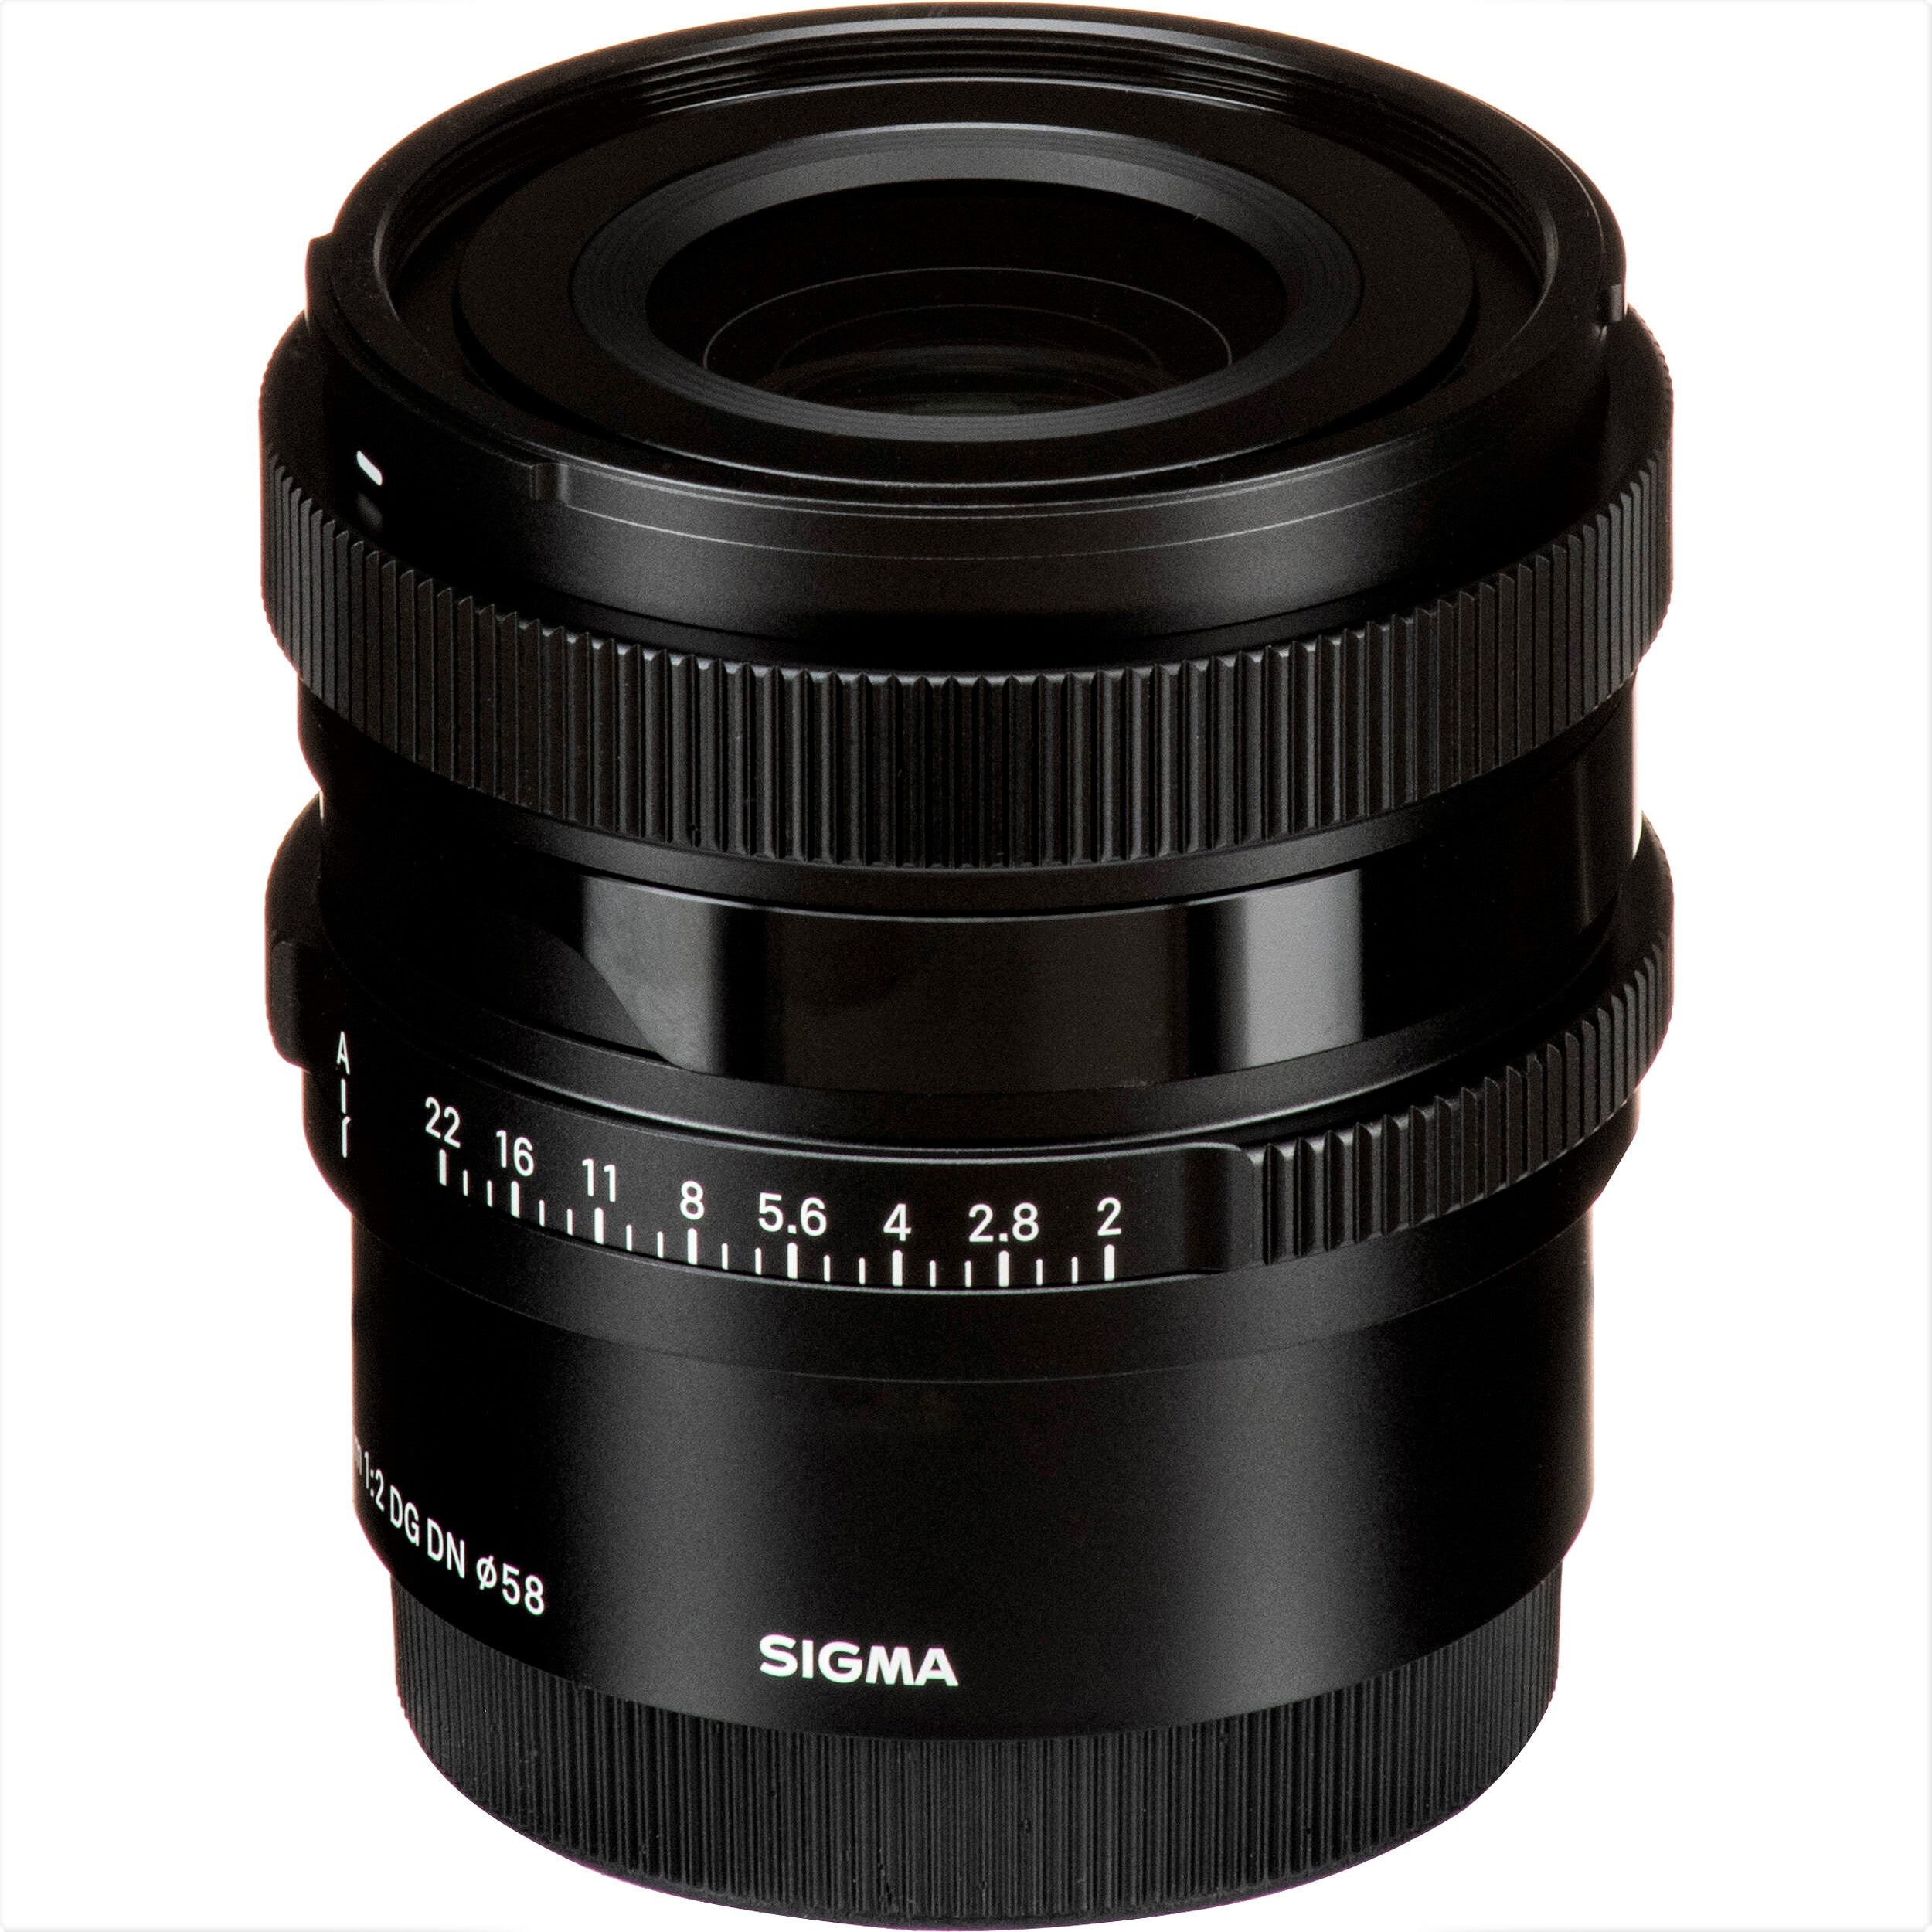 Sigma 35mm F2.0 DG DN Contemporary Lens for Sony E